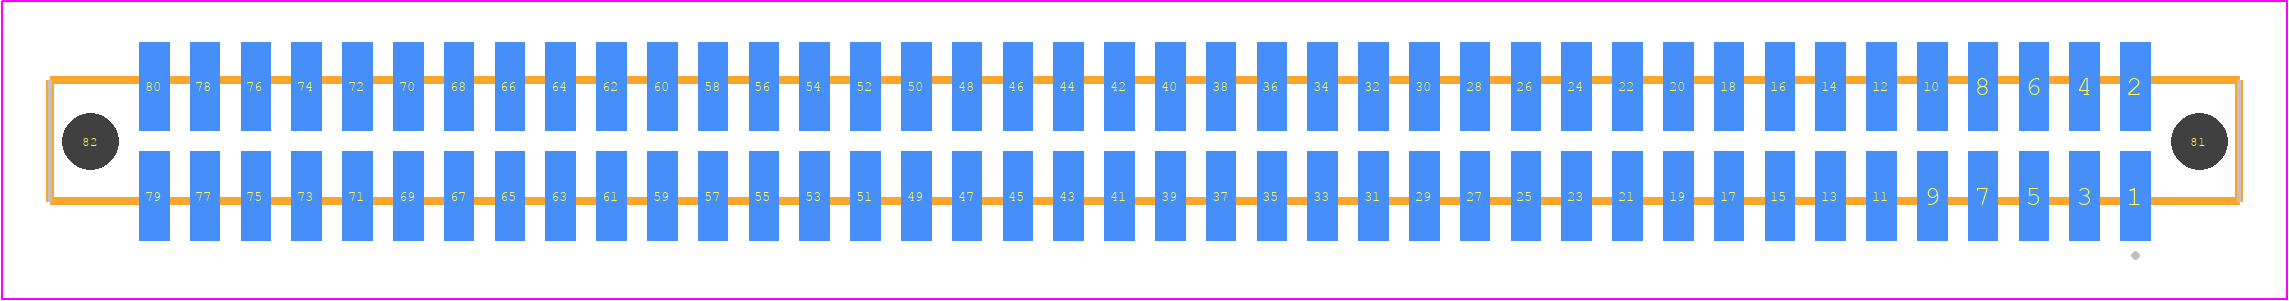 SFM-140-02-SM-D-A-K-TR - SAMTEC PCB footprint - Other - Other - SFM-140-YY-XXX-D-A-K-TR